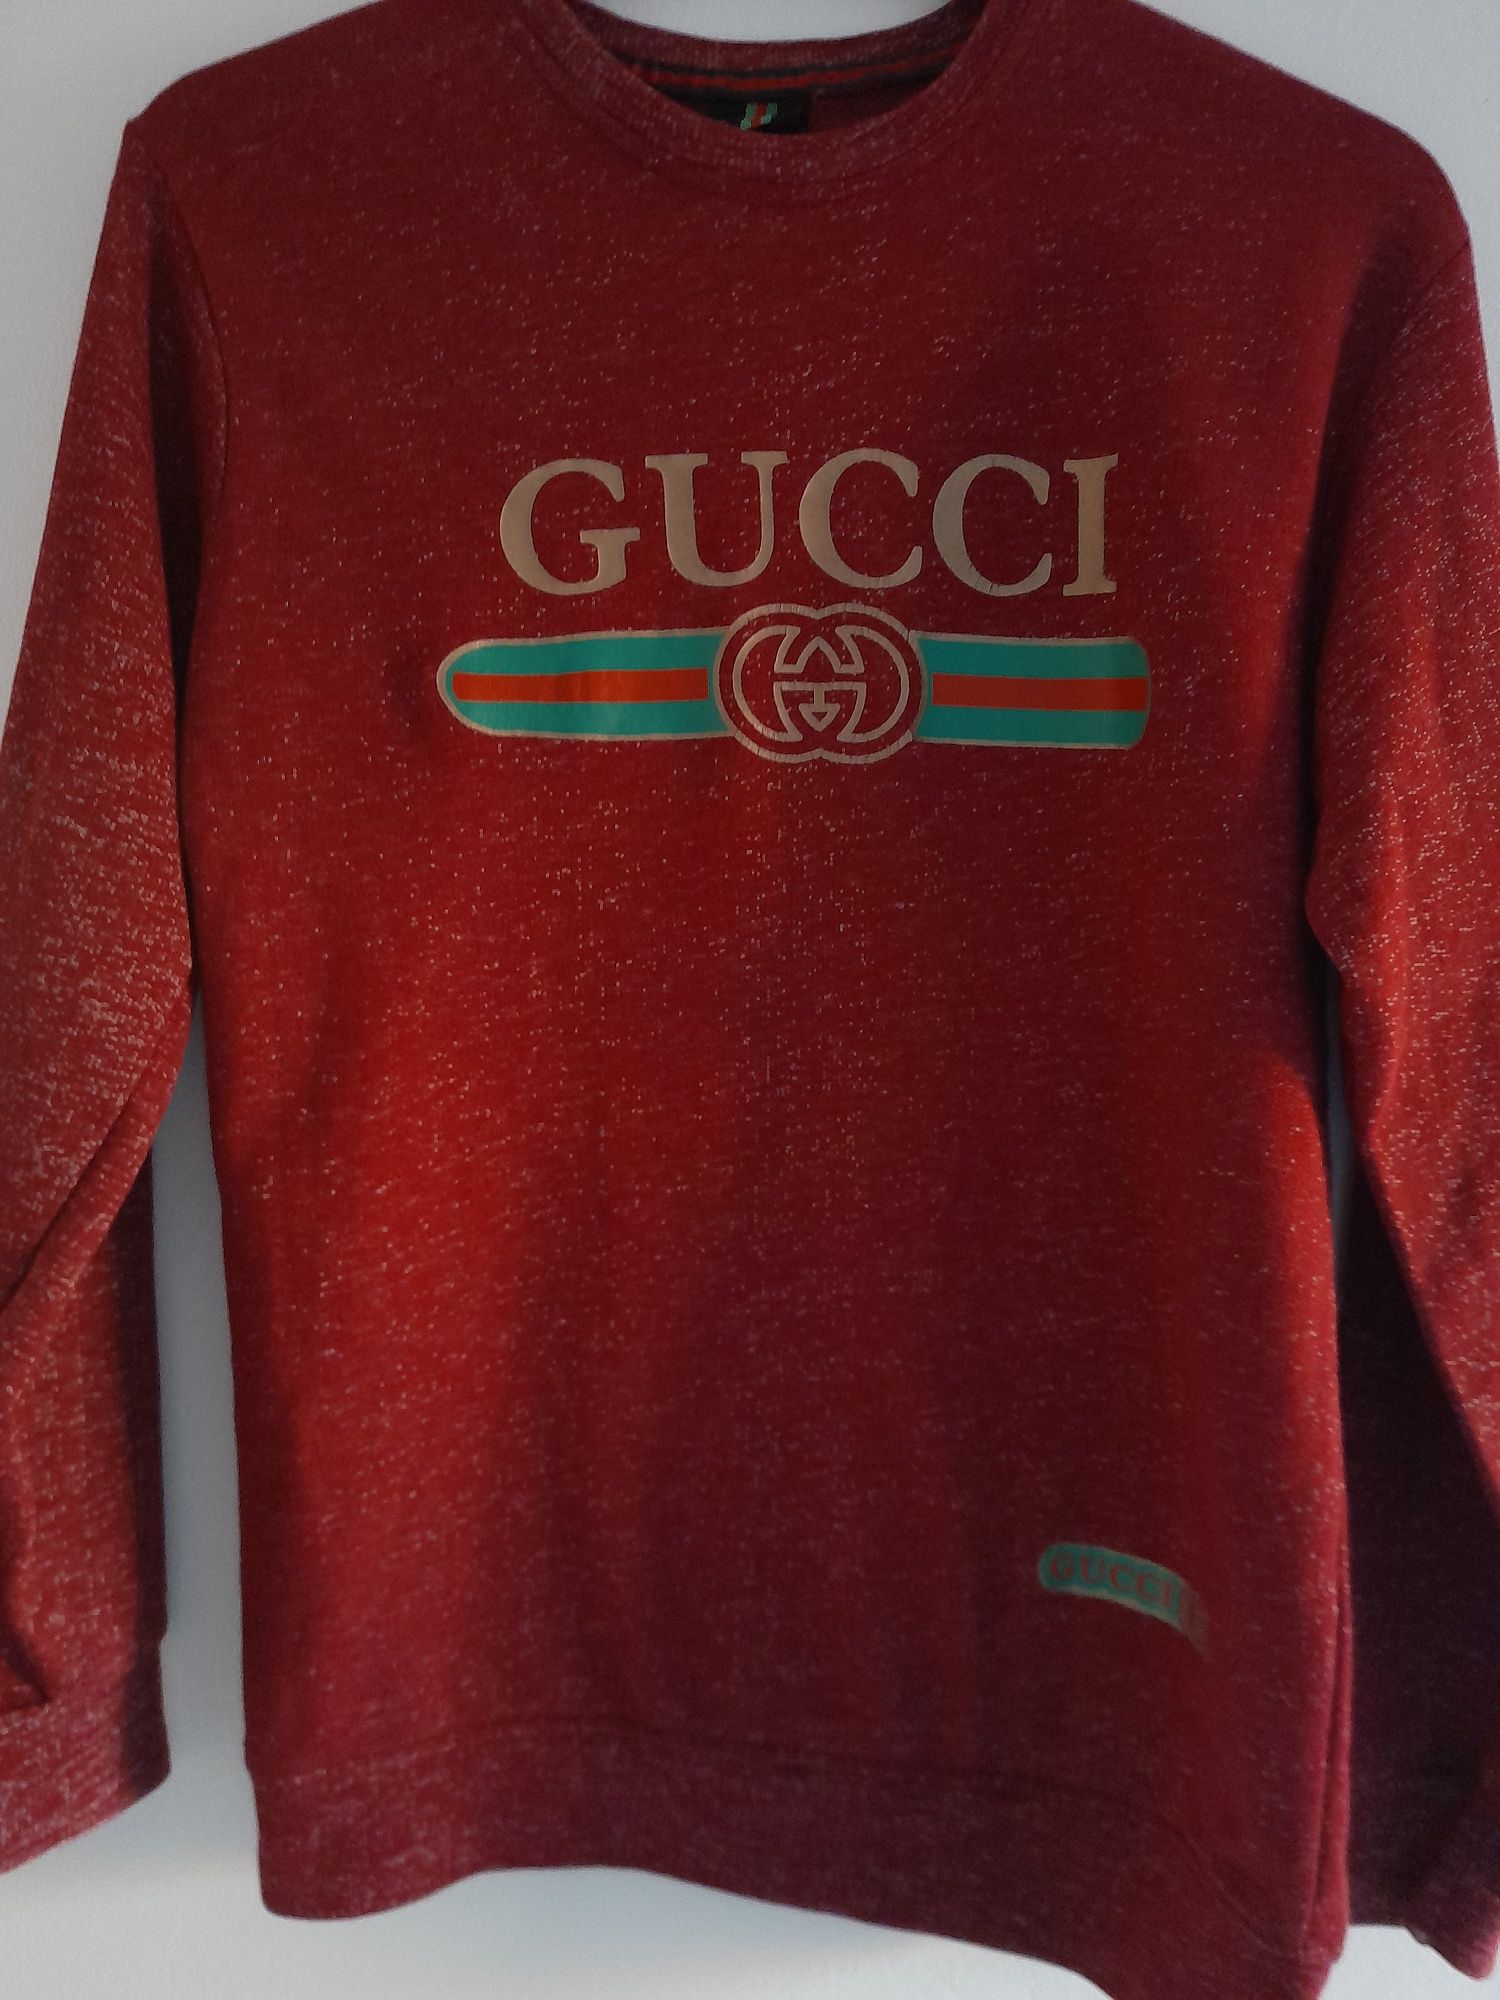 Bluză Gucci, model unisex, marsala